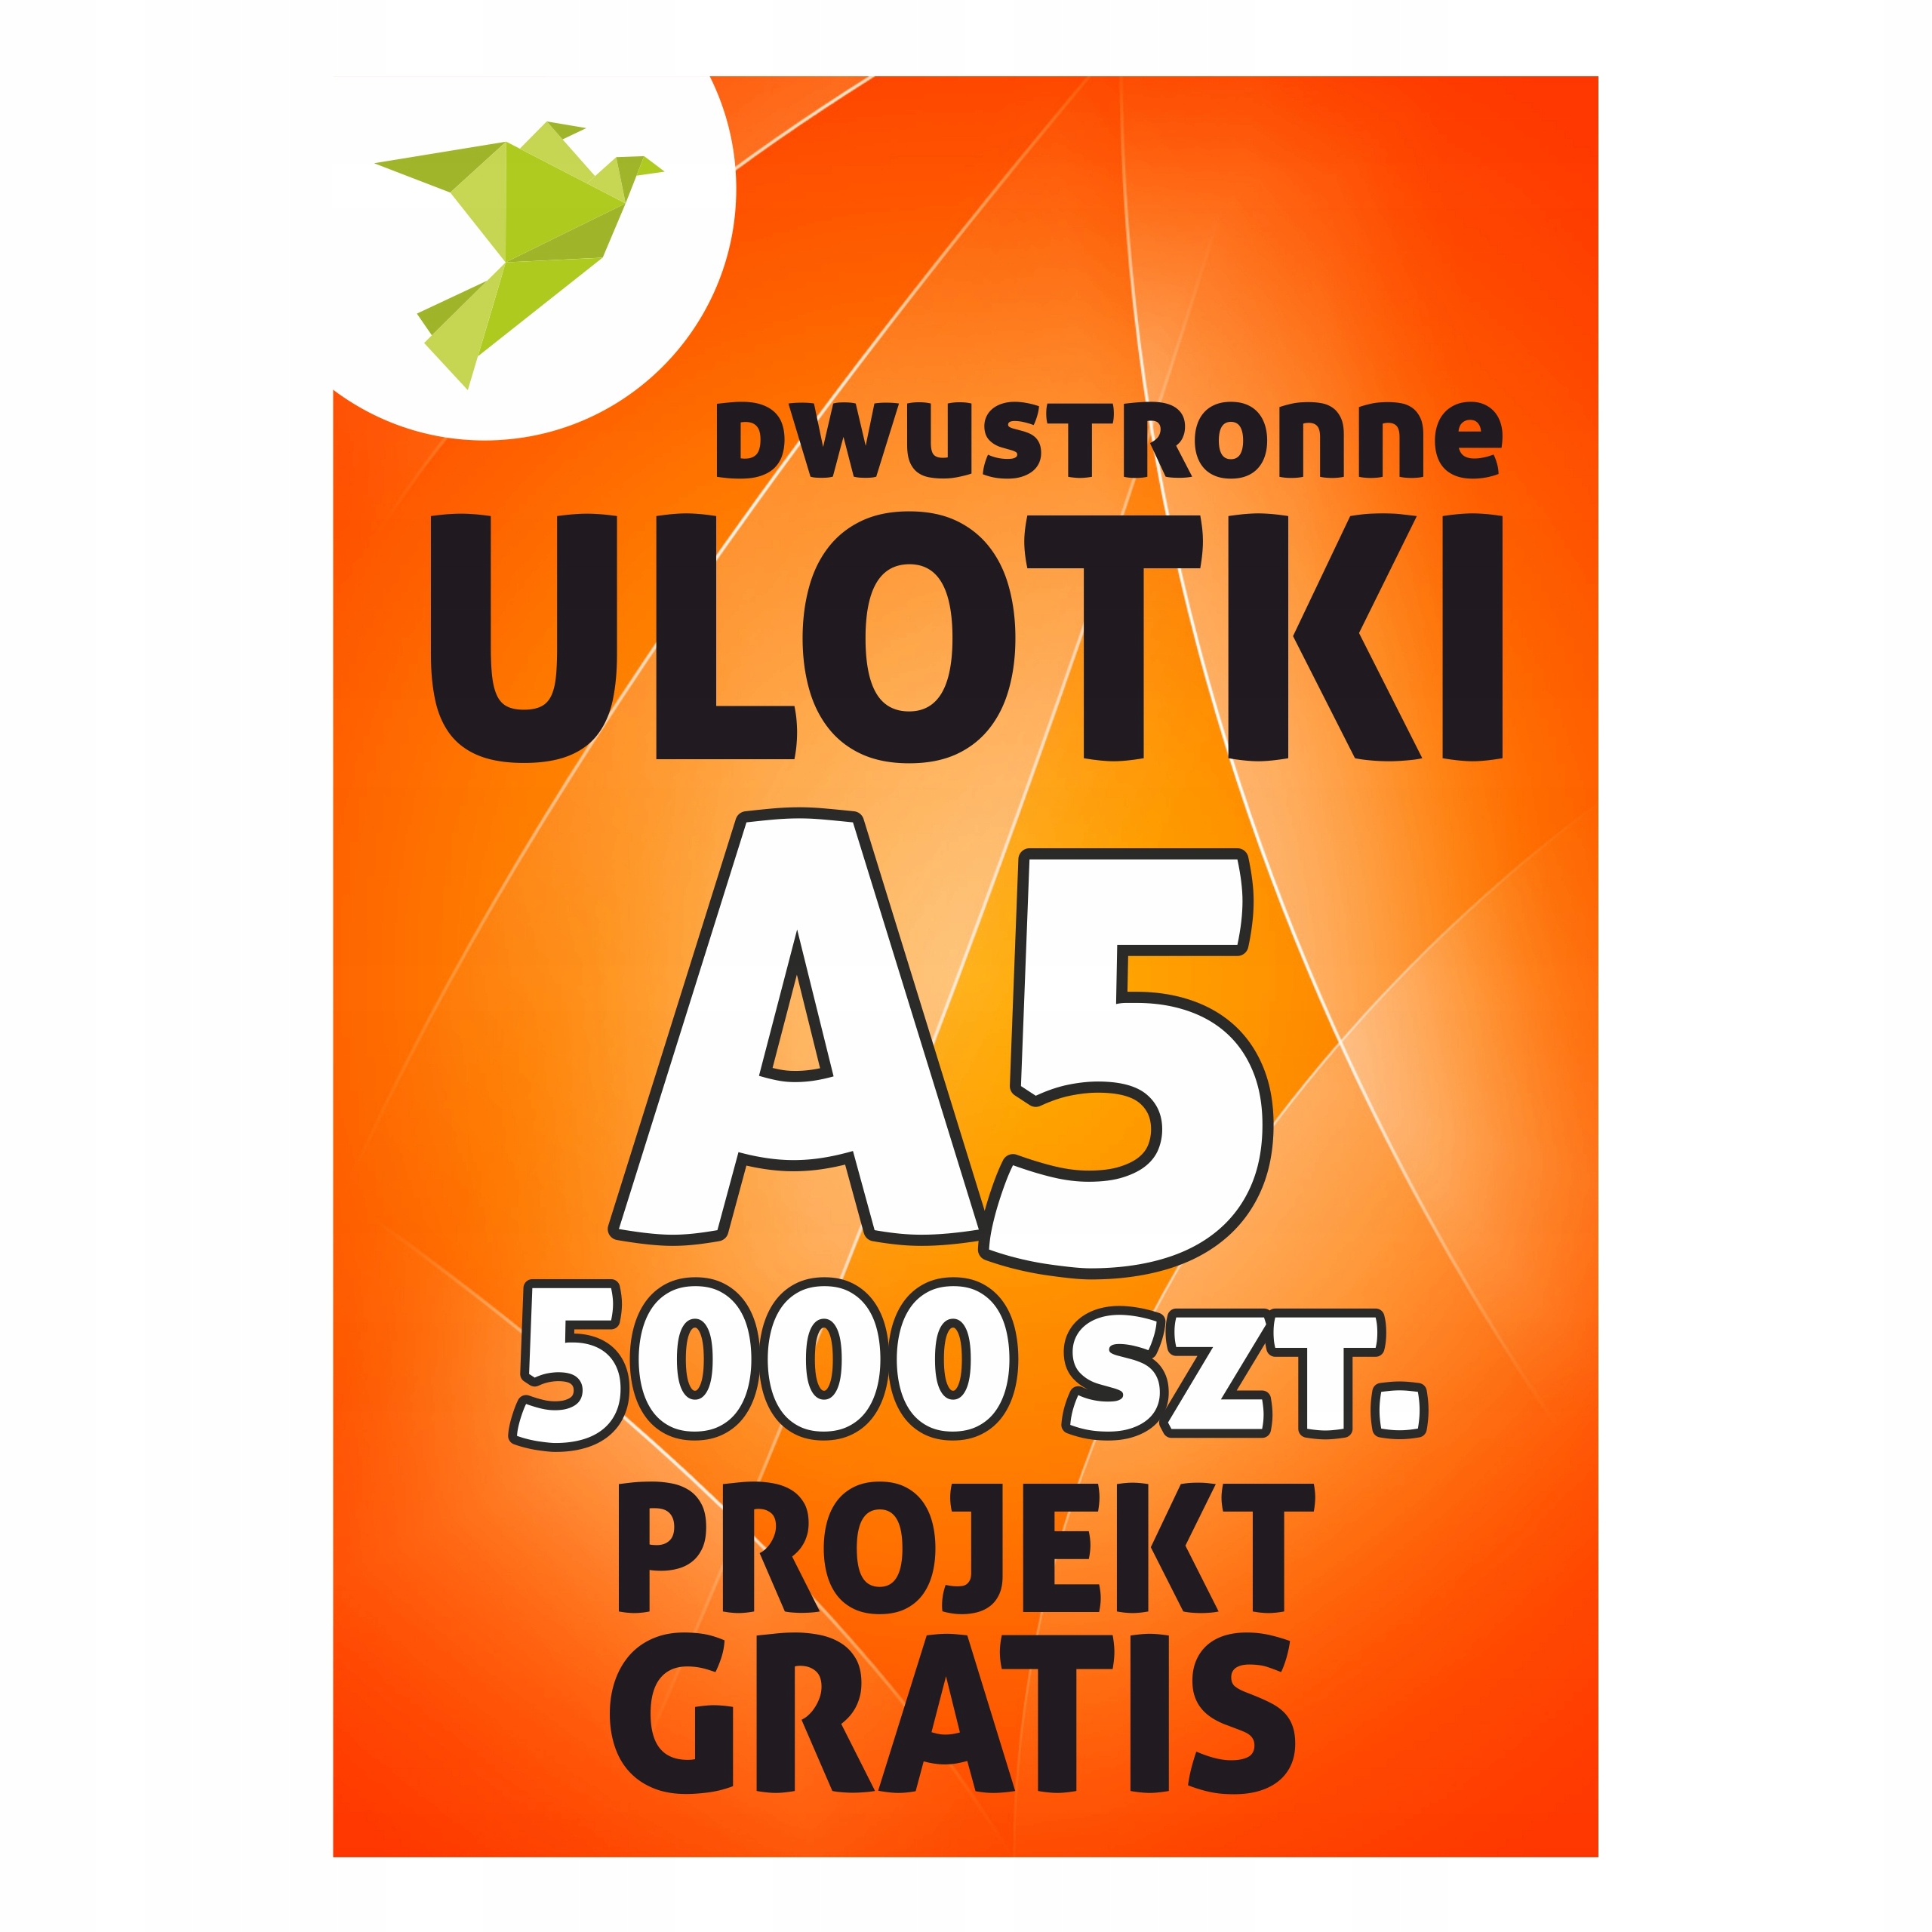 ULOTKI A5 5000 2str. - SUPER PROJEKT, EXTRA JAKOŚĆ